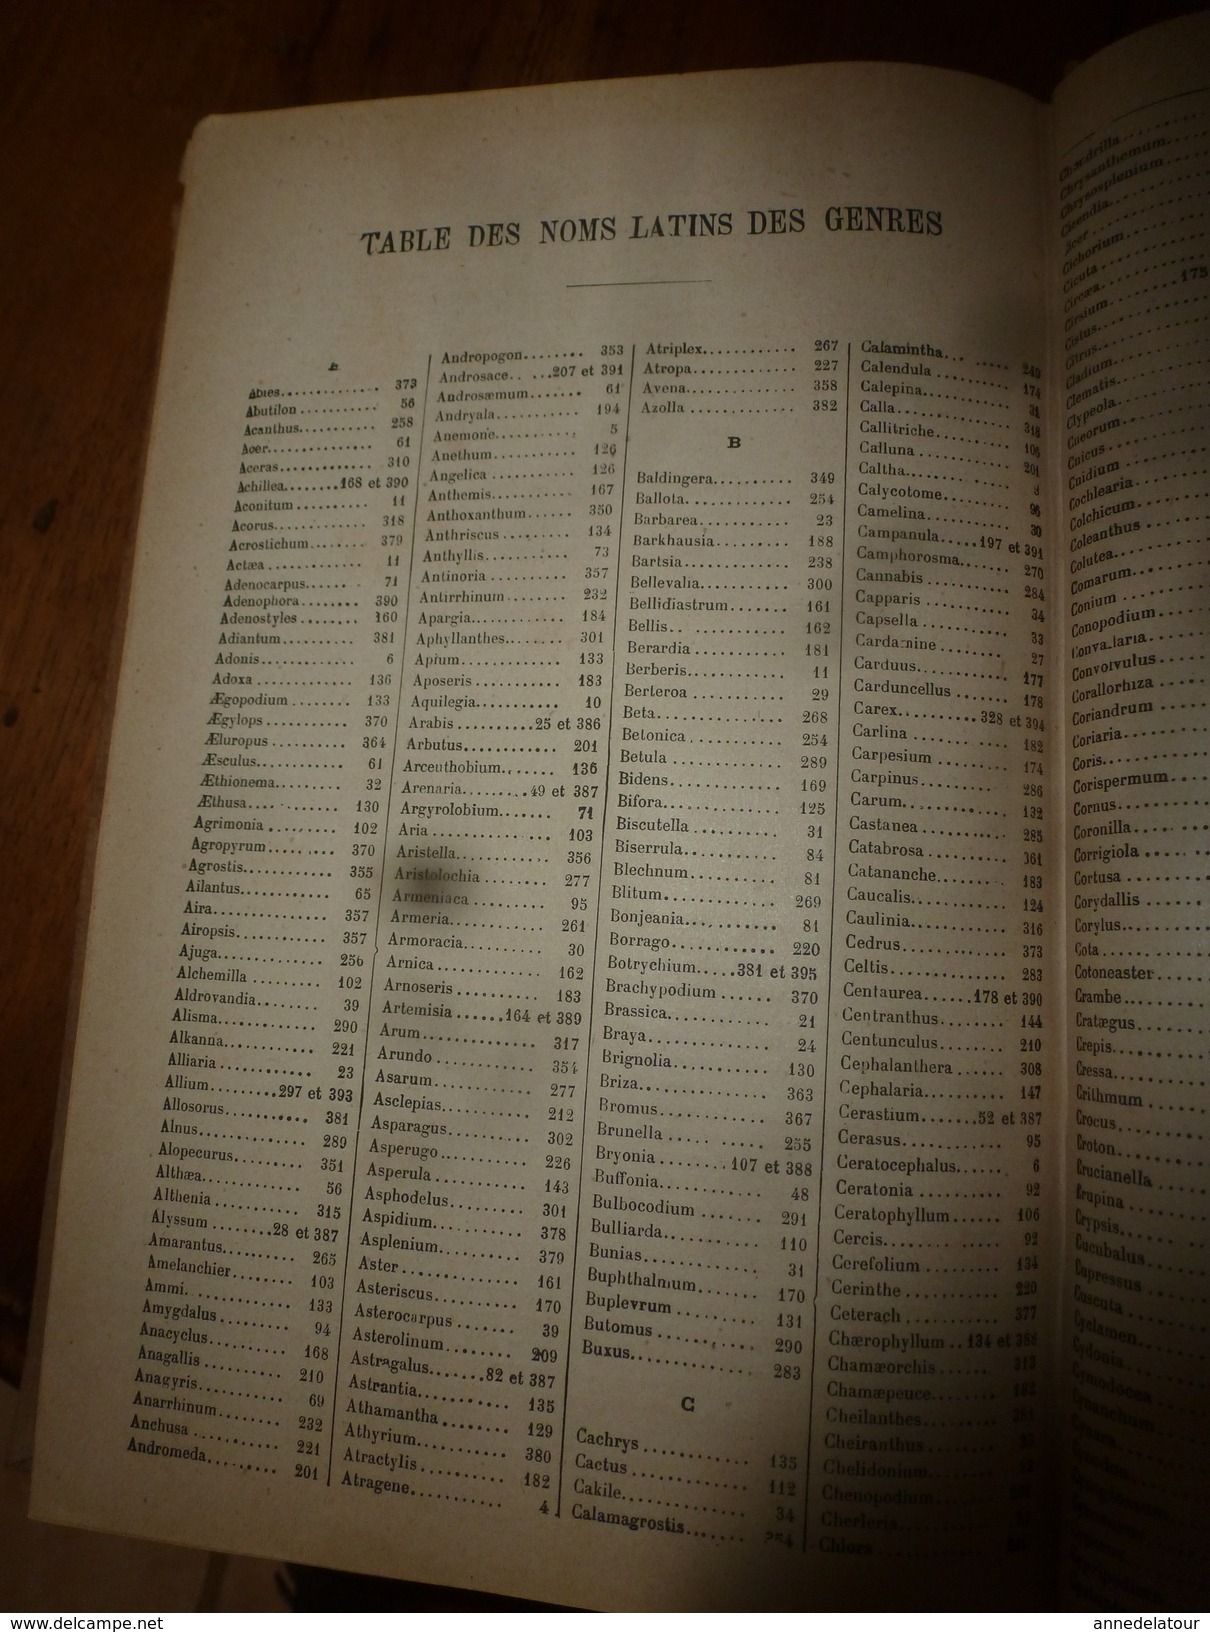 1944 FLORE complète de la France et de la Suisse par G. Bonnier et G. de Layens , comprenant 5.338 figures;etc